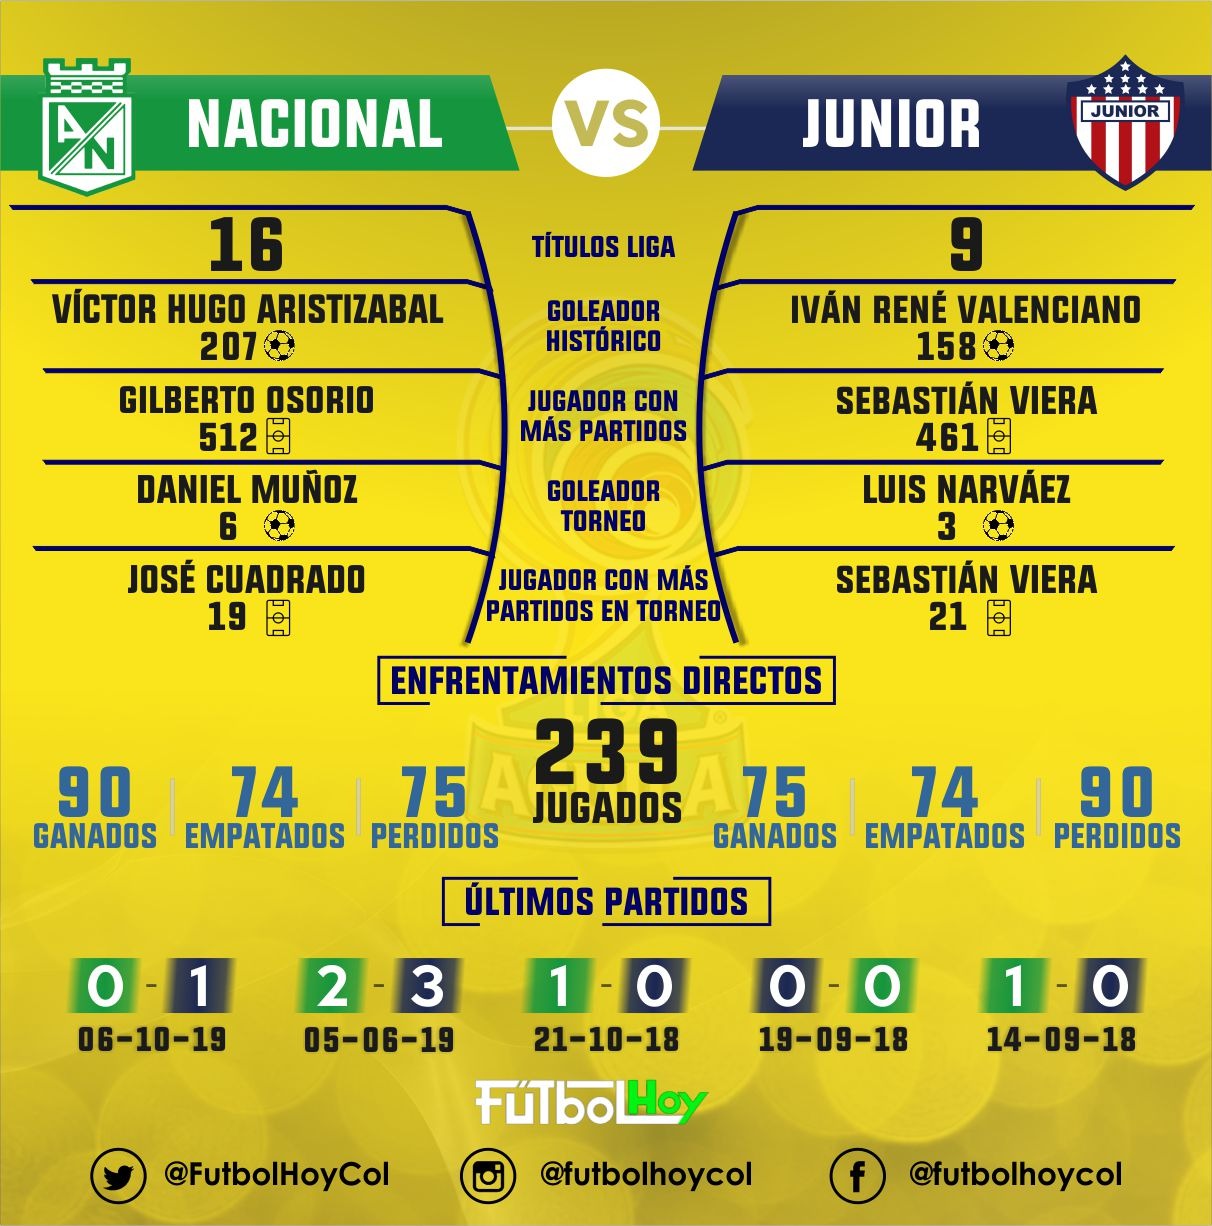 ¿Quién a ganado más partido entre Junior y Nacional